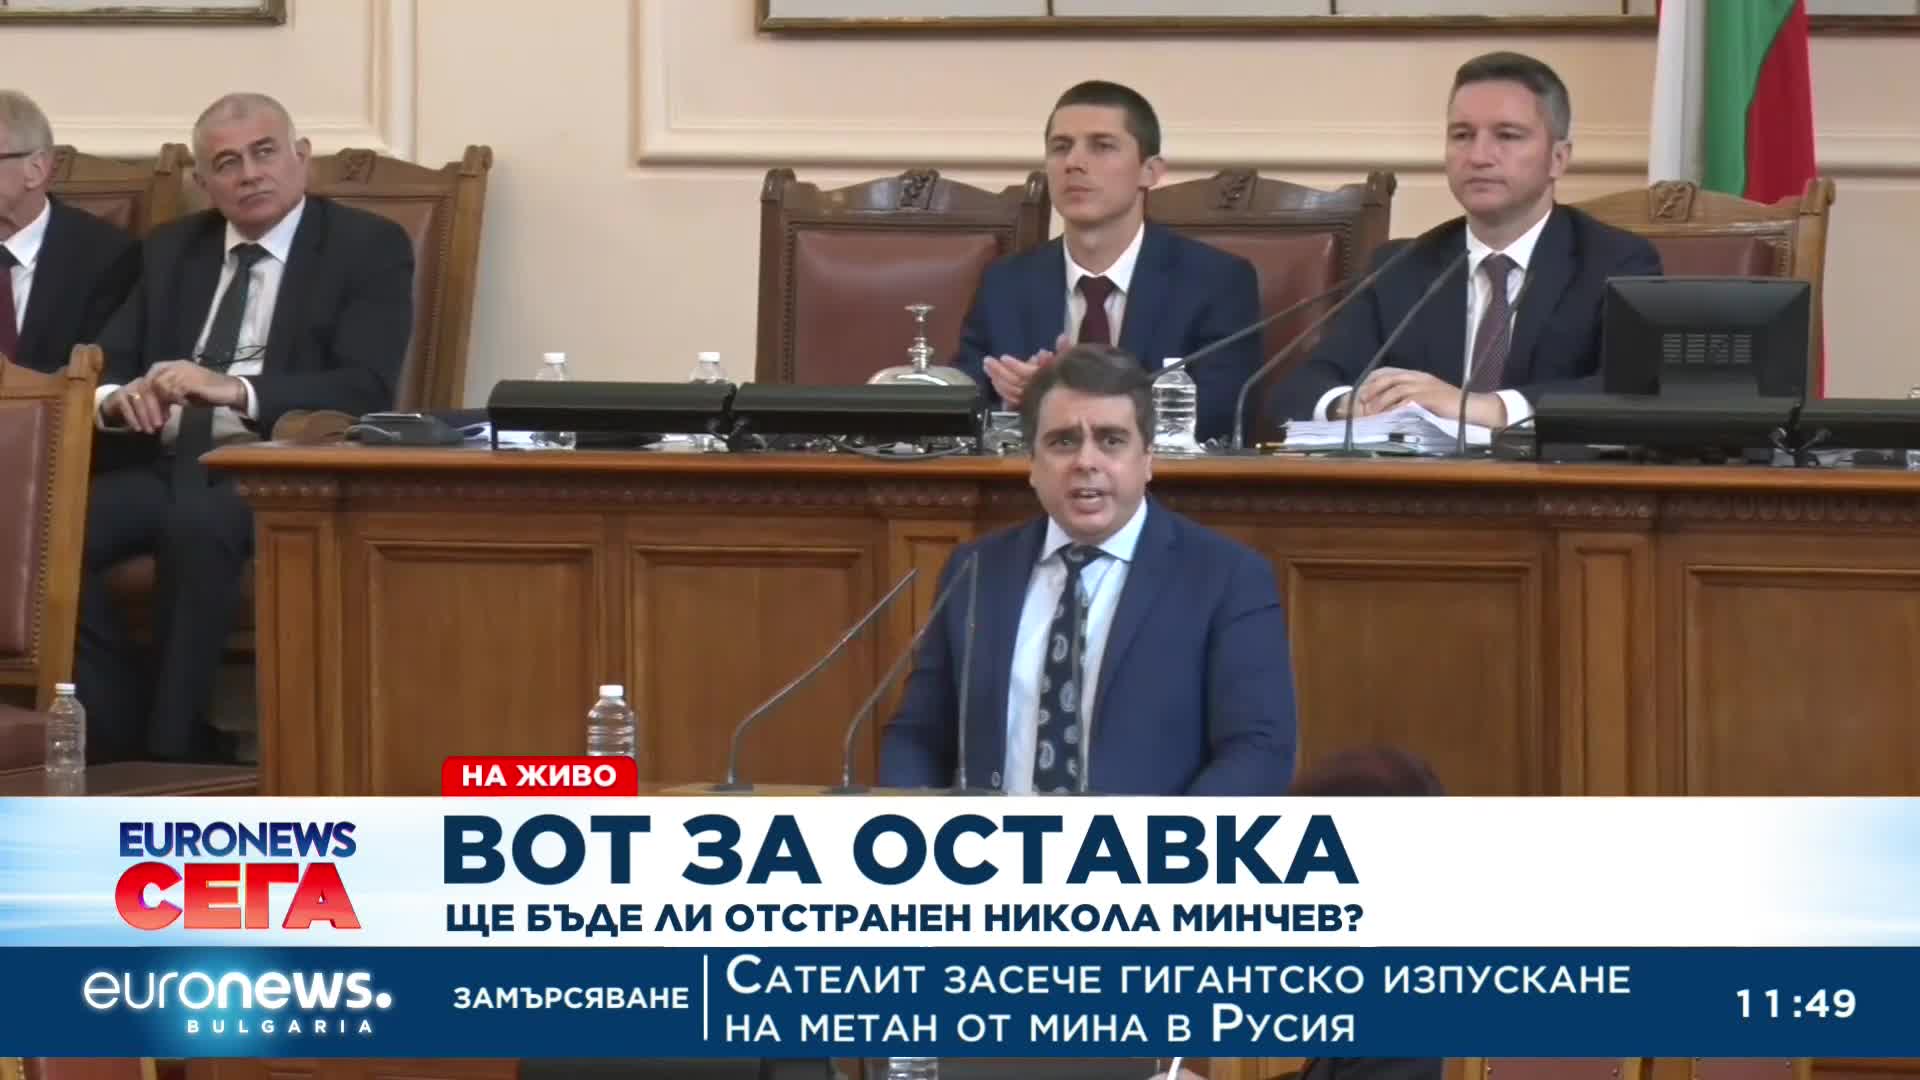 Изказване на Асен Василев от парламентарната трибуна